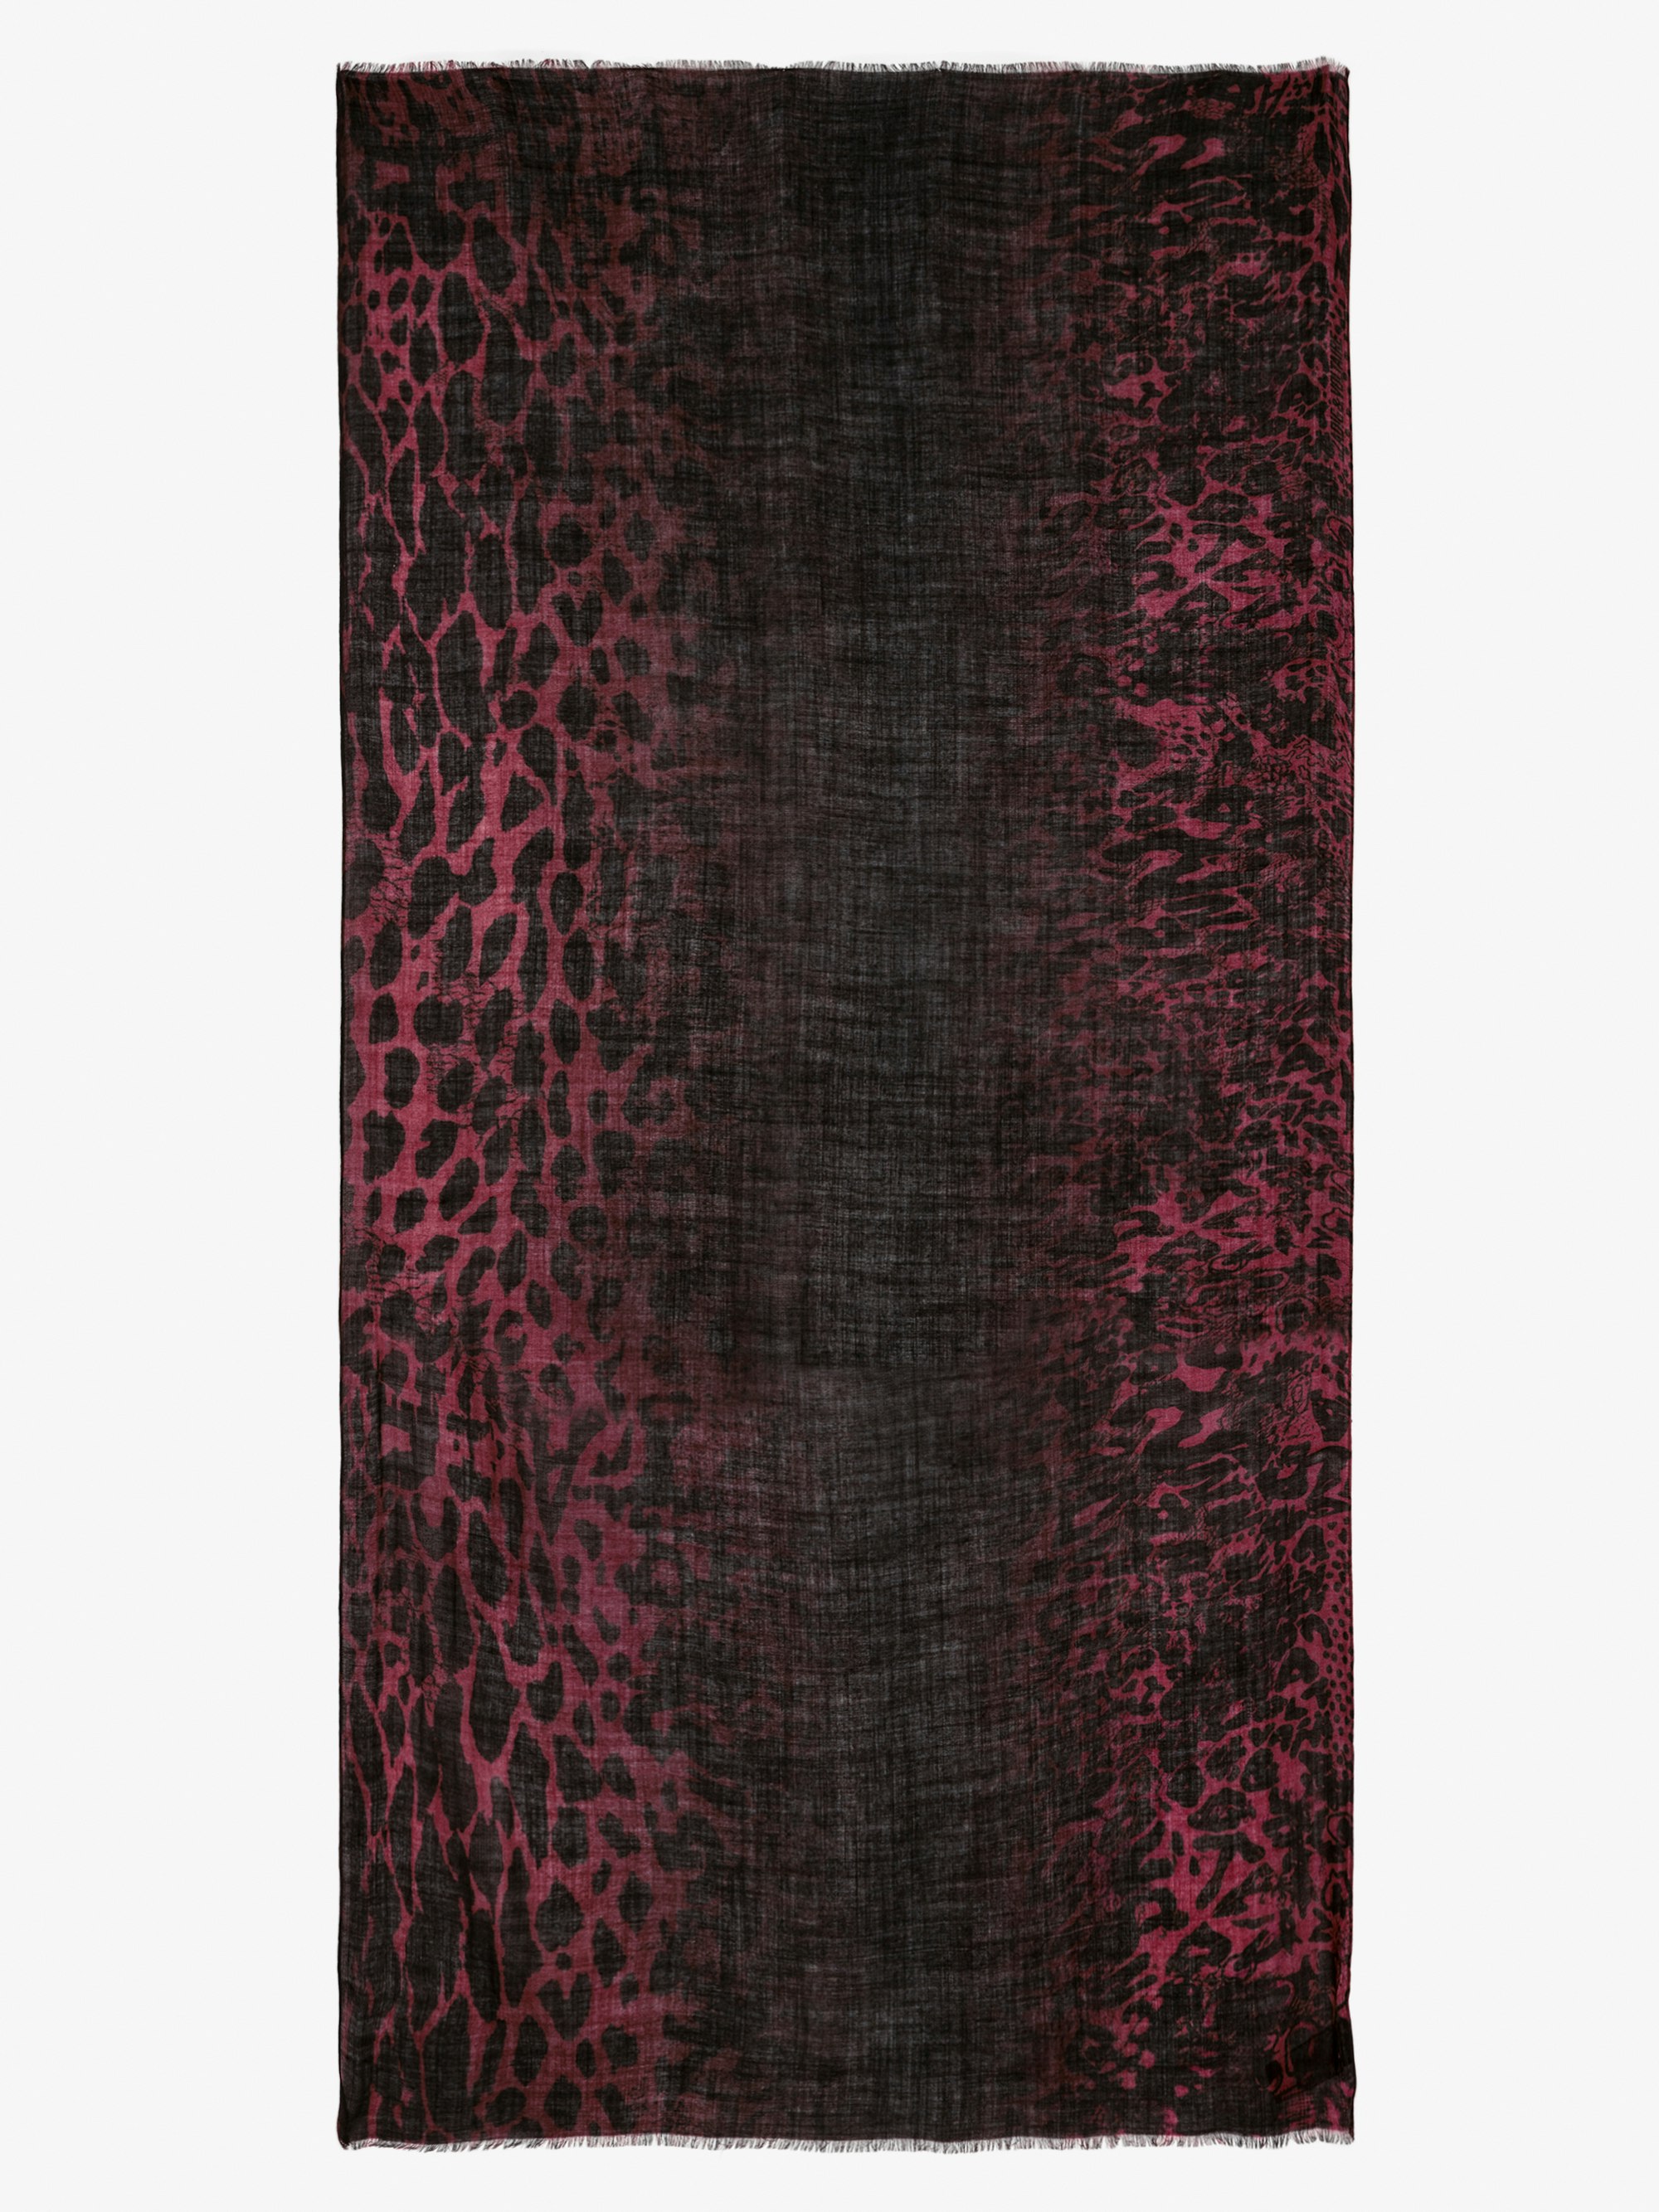 Pañuelo Judy - Pañuelo de lana de color rojo con estampado de leopardo con efecto tie & dye.